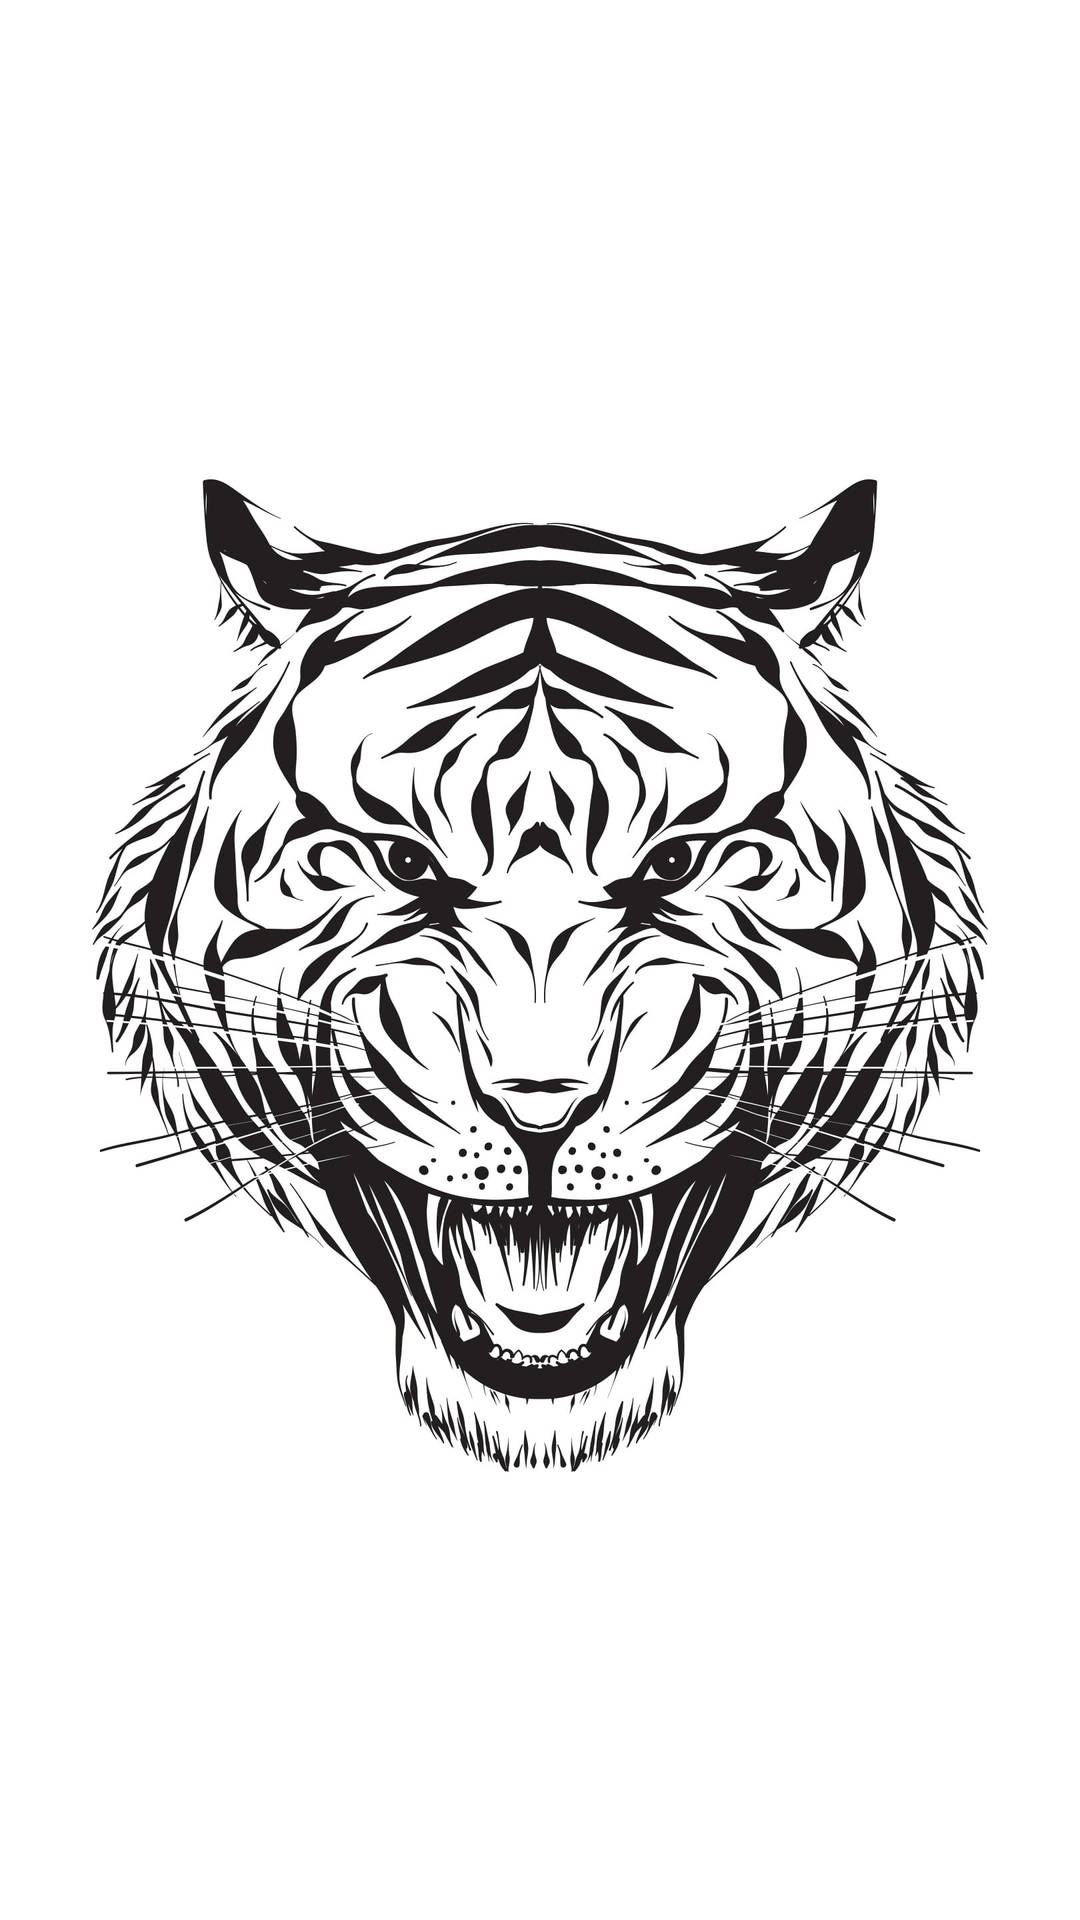 Majestic Tiger Head Hd Tattoo Design Wallpaper